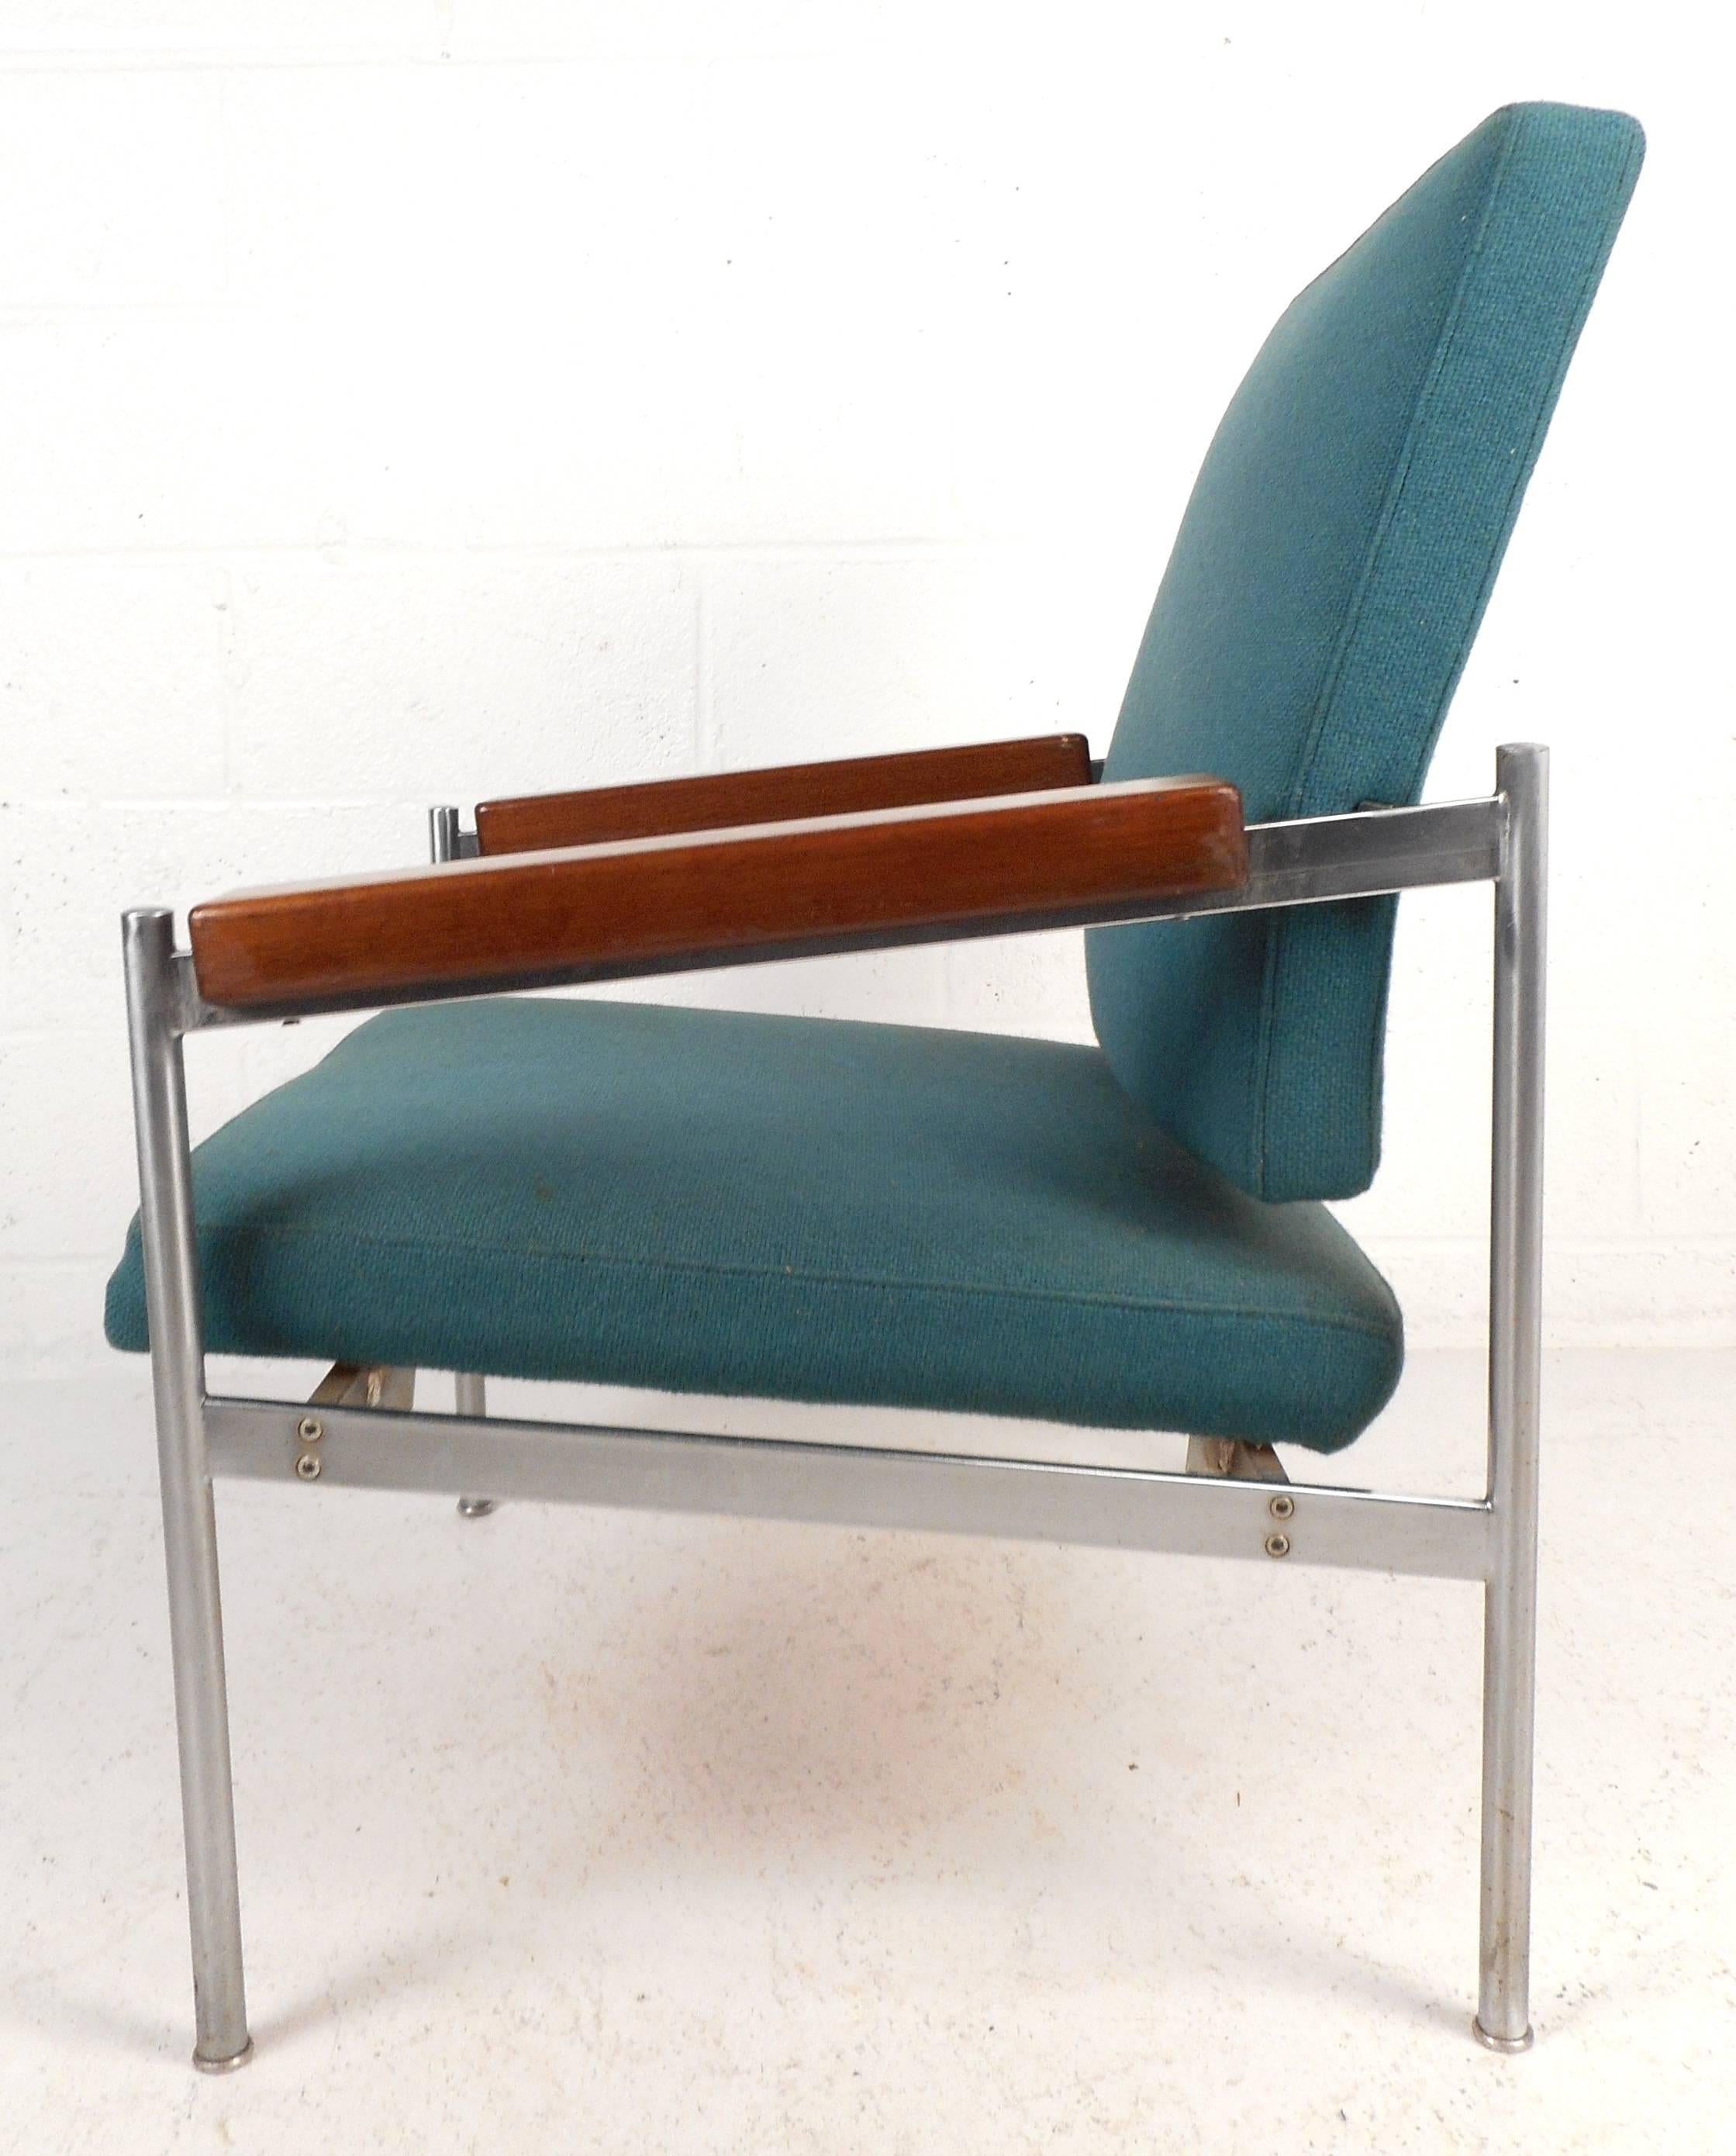 Atemberaubender moderner Loungesessel im Vintage-Stil mit stilvollen schrägen Holzarmlehnen und aquablauer Polsterung. Die ungewöhnliche Kombination von Chrom, Stoff und Holz macht den Reiz aus. Dieser dänische Sessel verleiht jeder Sitzgruppe Stil